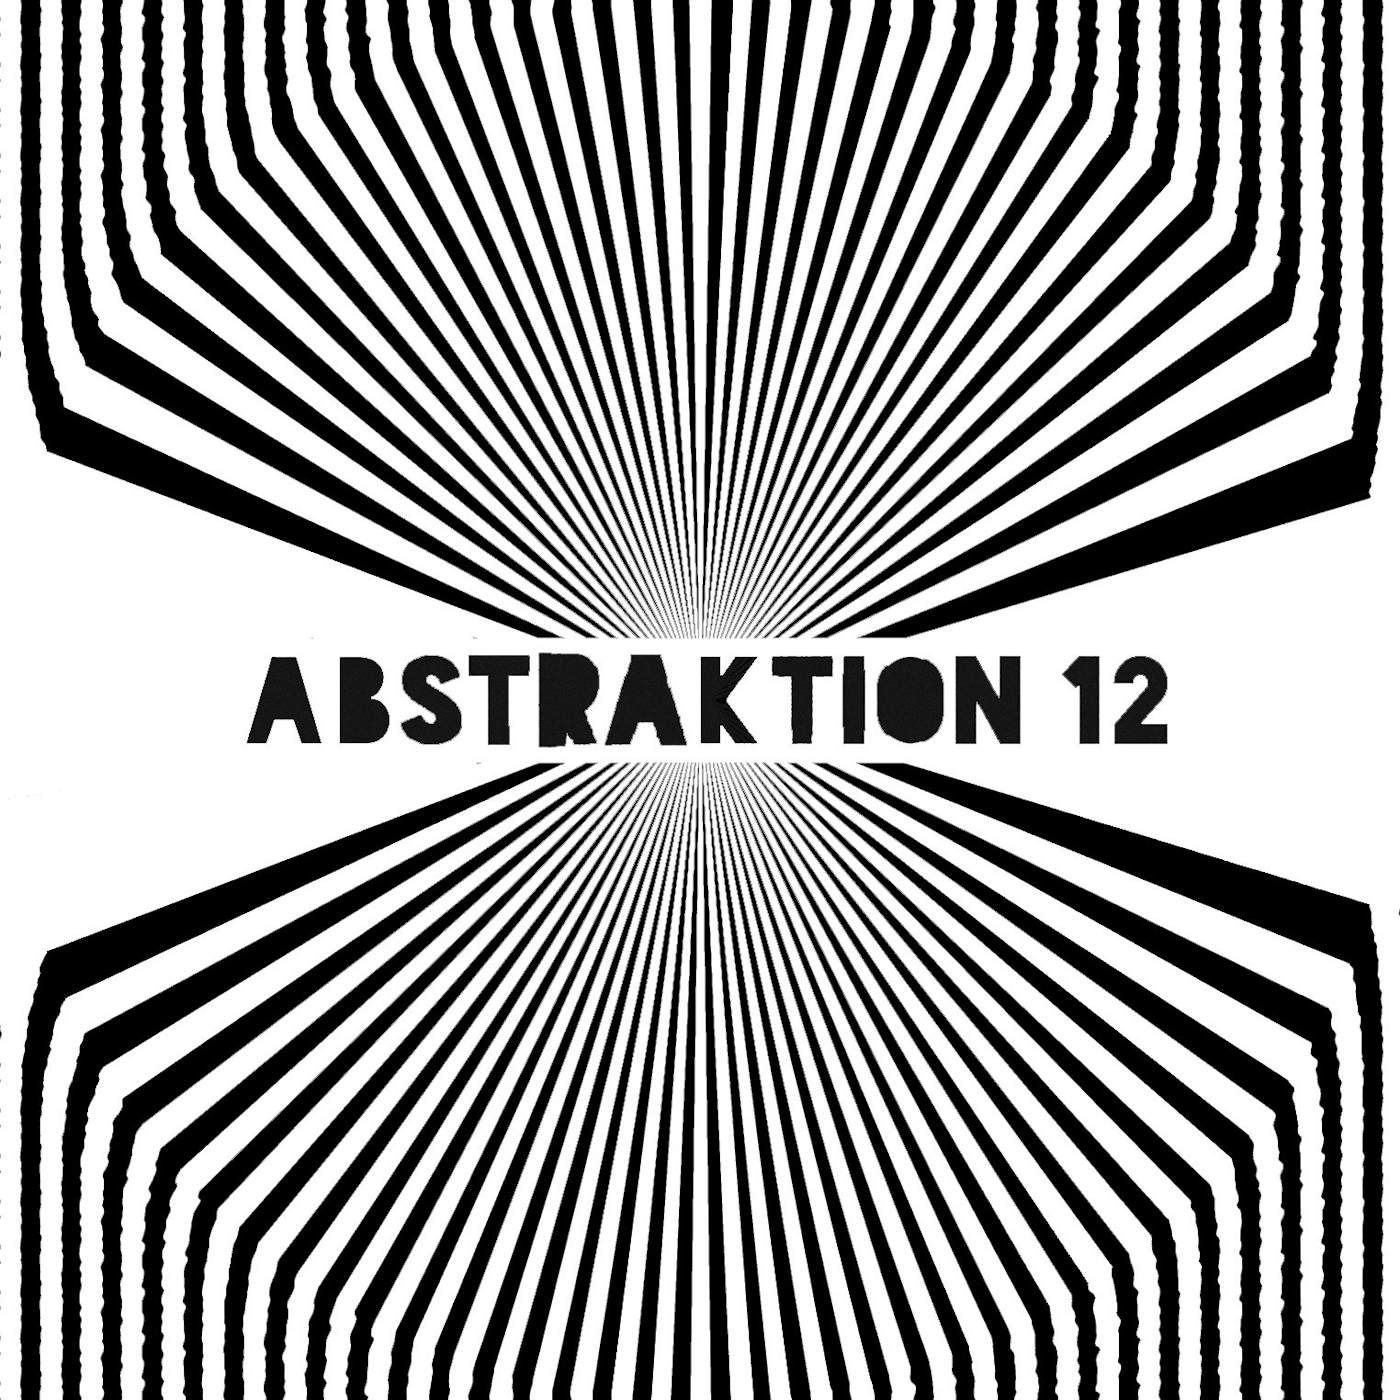 Six By Seven 'Abstraktion 12' Vinyl 2xLP Vinyl Record